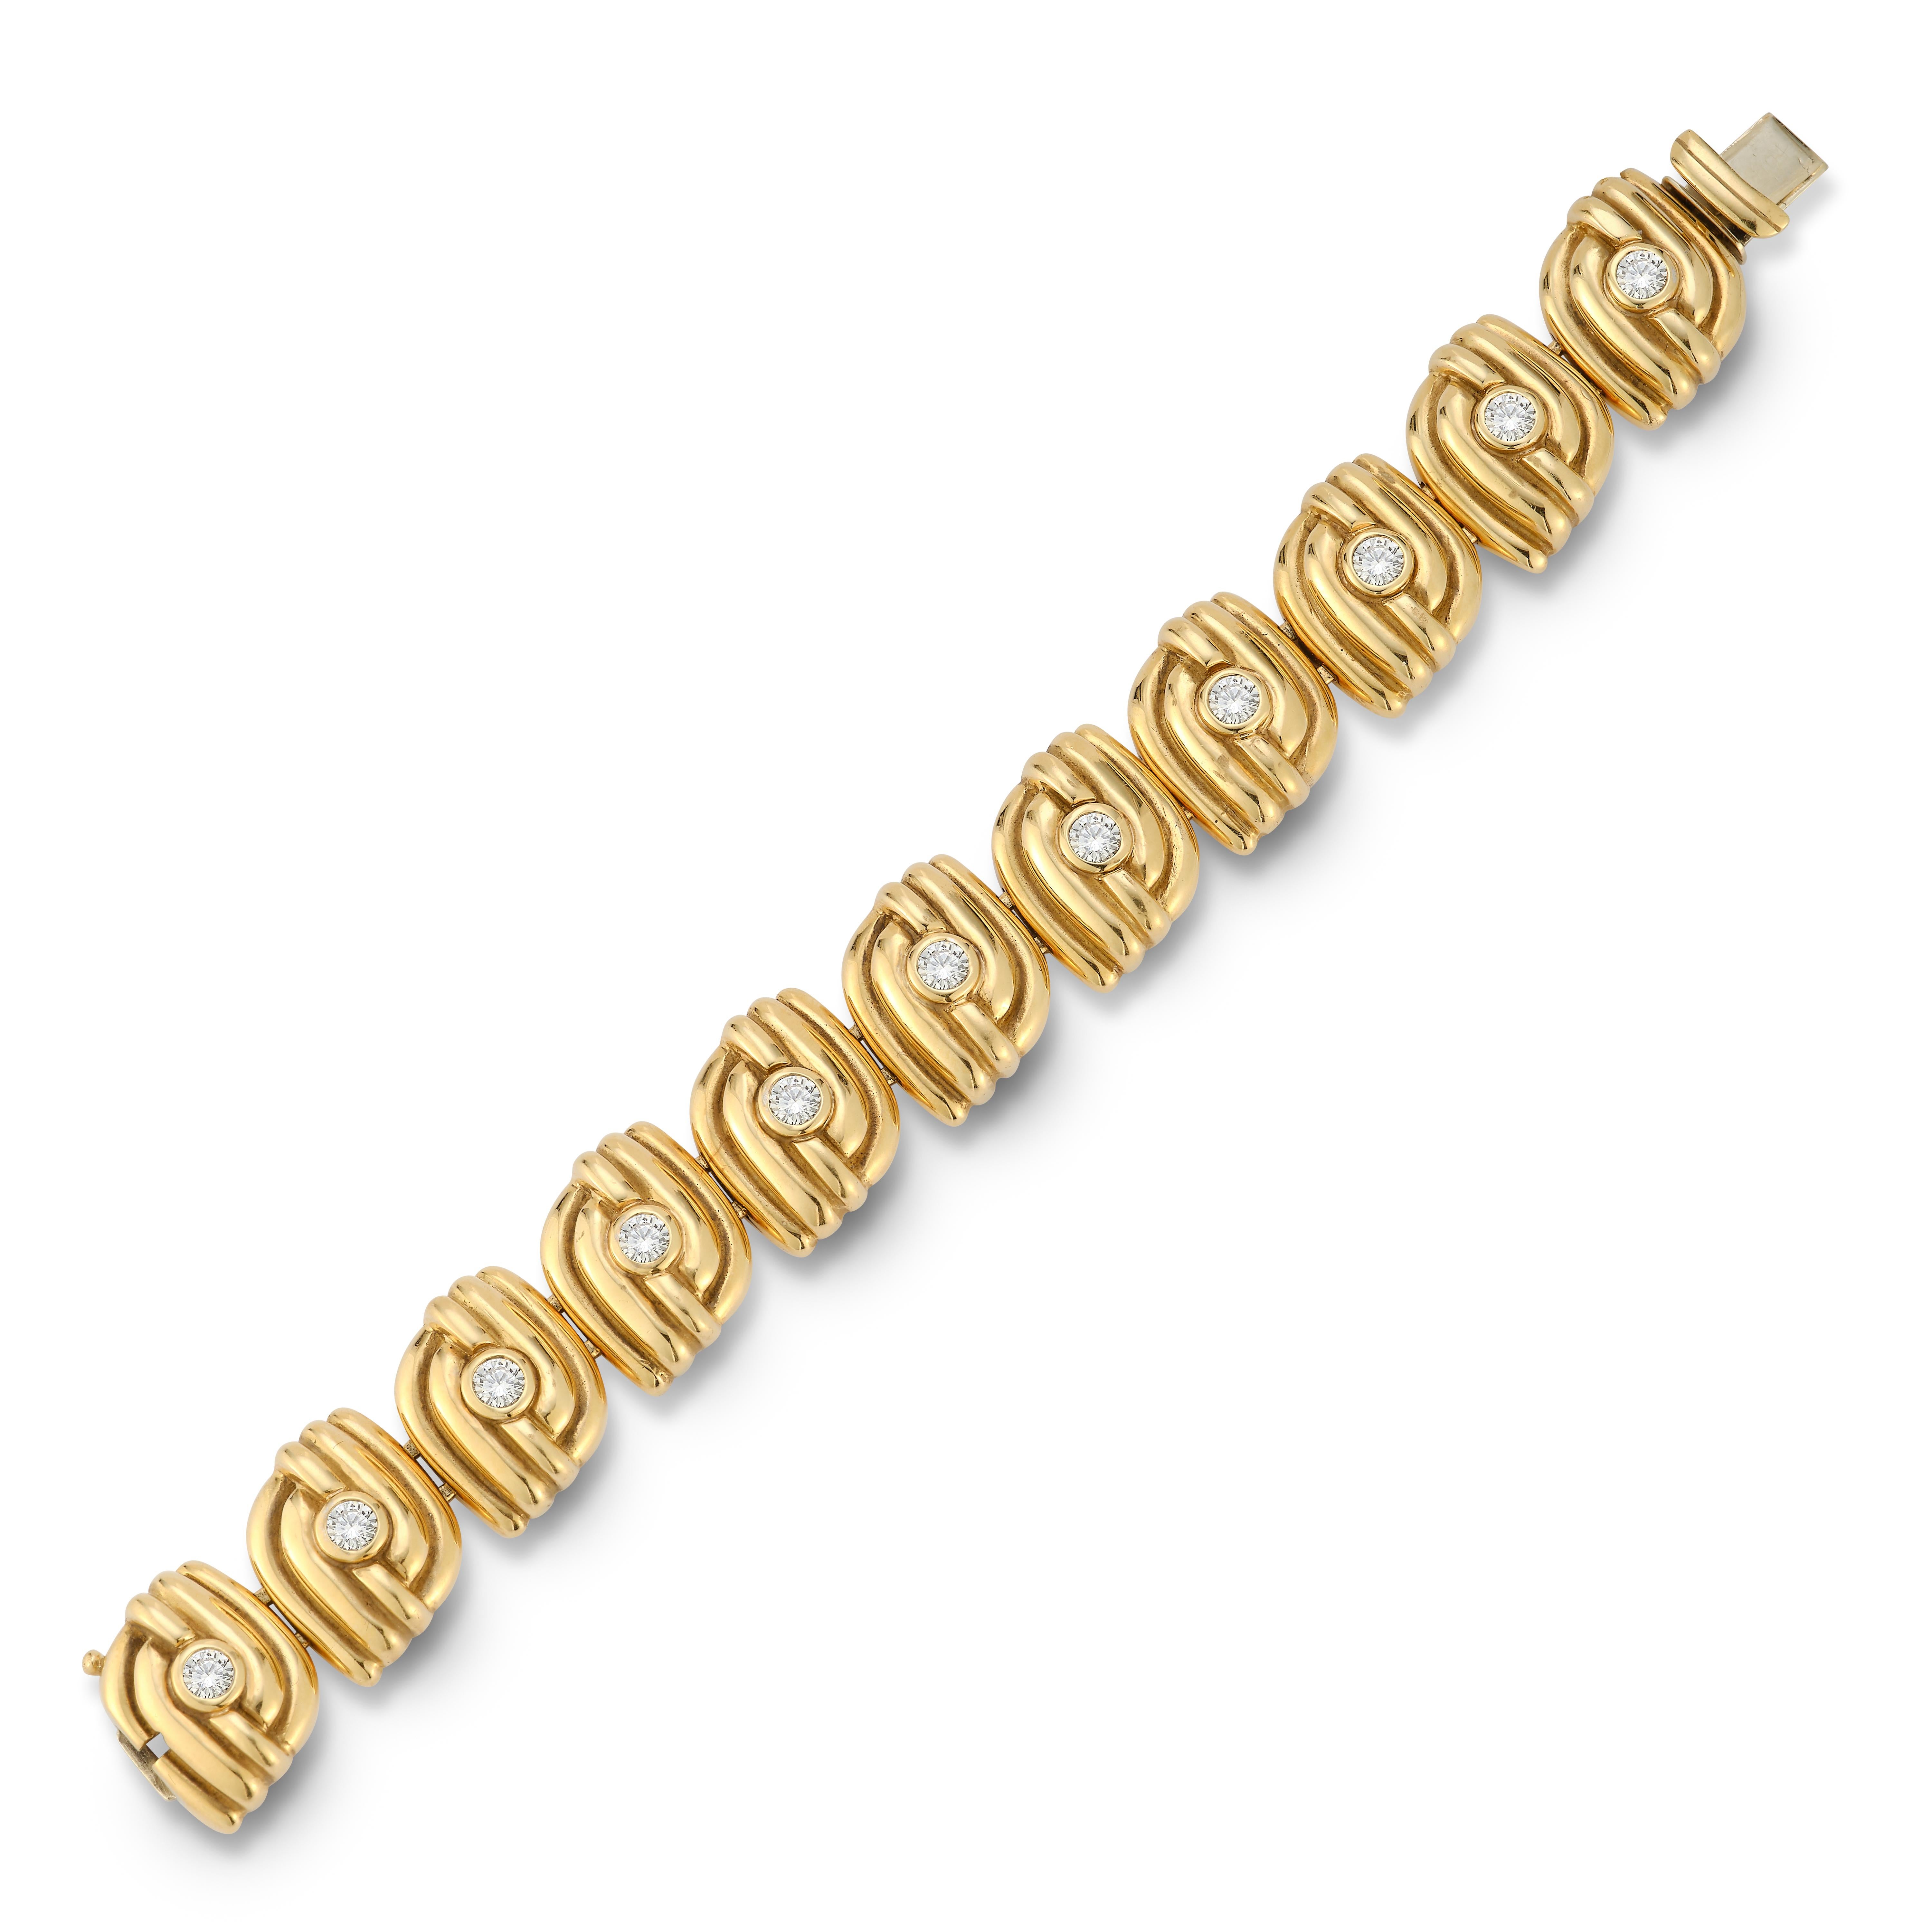 Bracelet en or et diamants ronds 

11 diamants taille ronde sertis en or jaune 18k.

Poids du diamant : environ 2,68 cts 

Mesures : 7